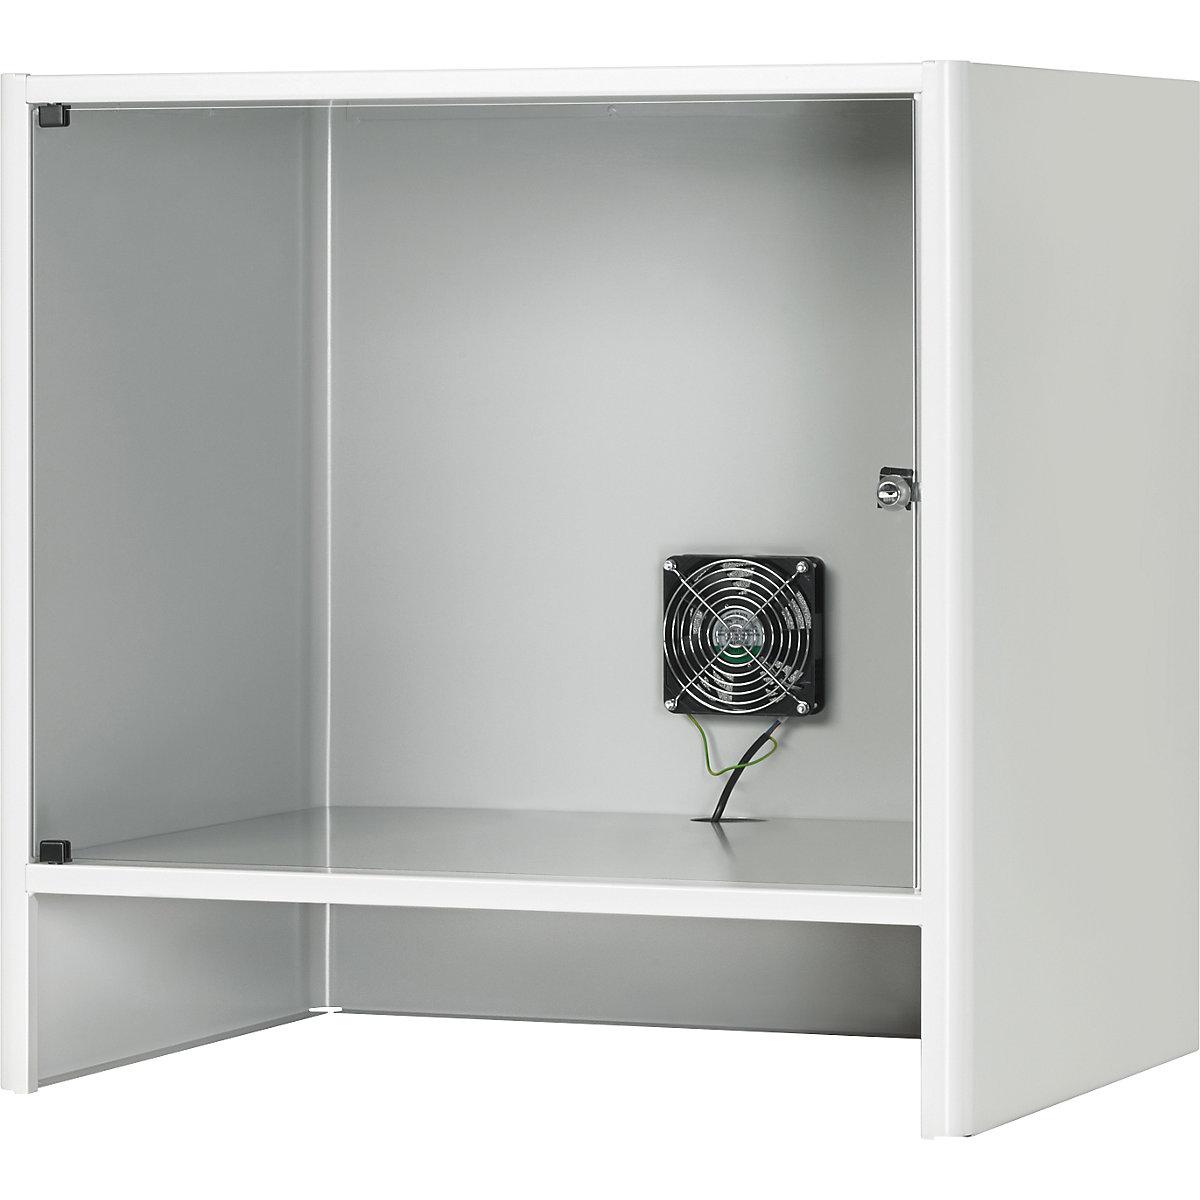 RAU – Caixa para monitor com ventilador ativo integrado